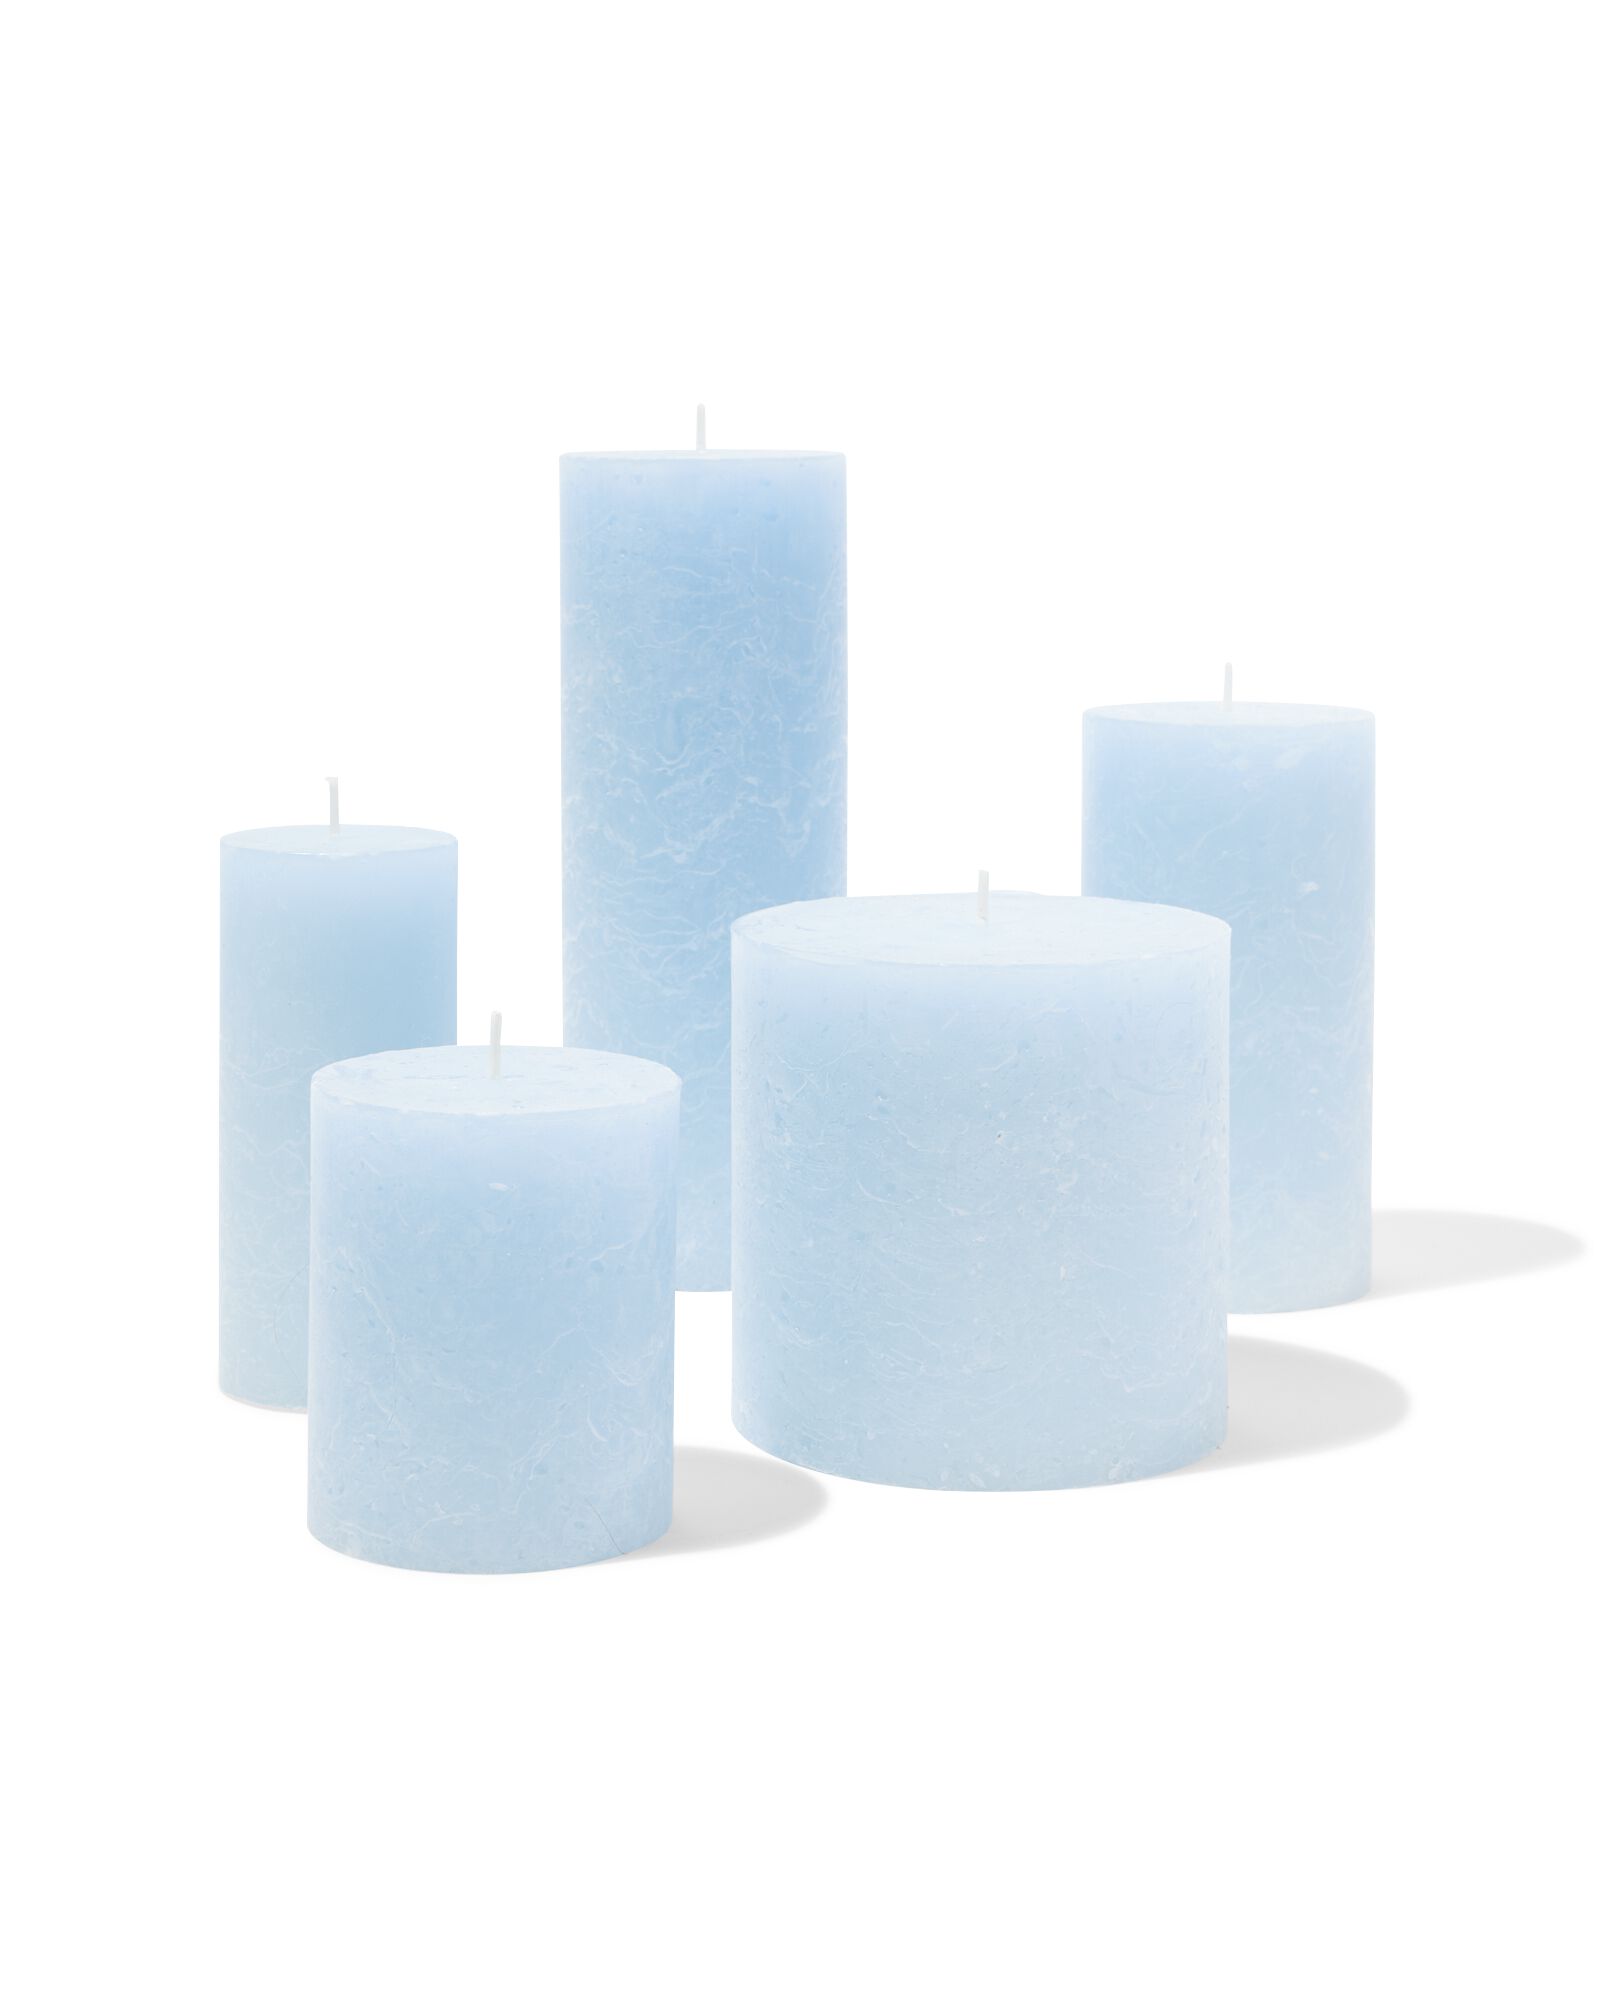 rustieke kaarsen lichtblauw lichtblauw - 1000031629 - HEMA